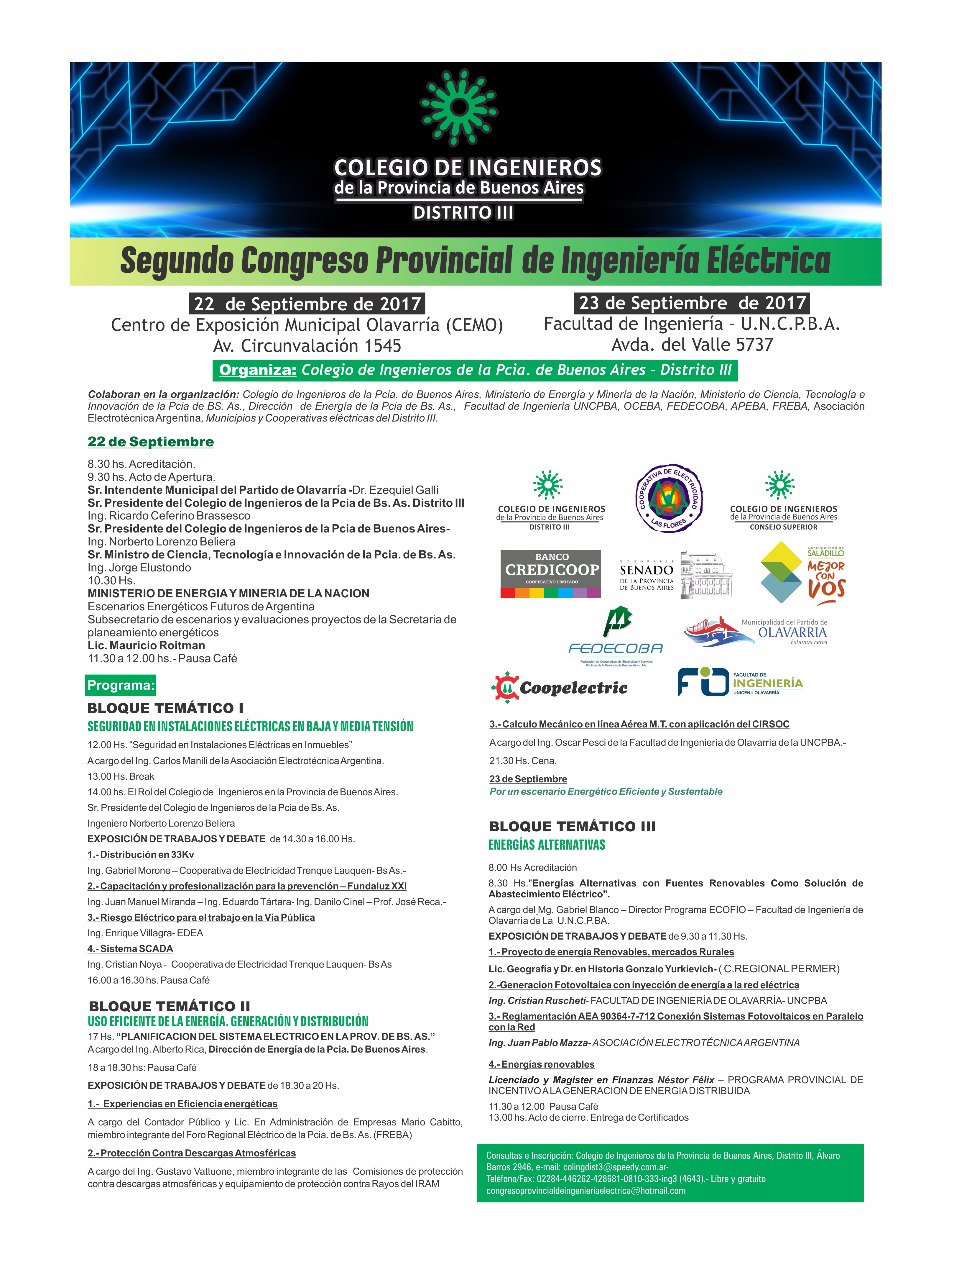 2º Congreso Provincial de Ingeniería Eléctrica FLYER